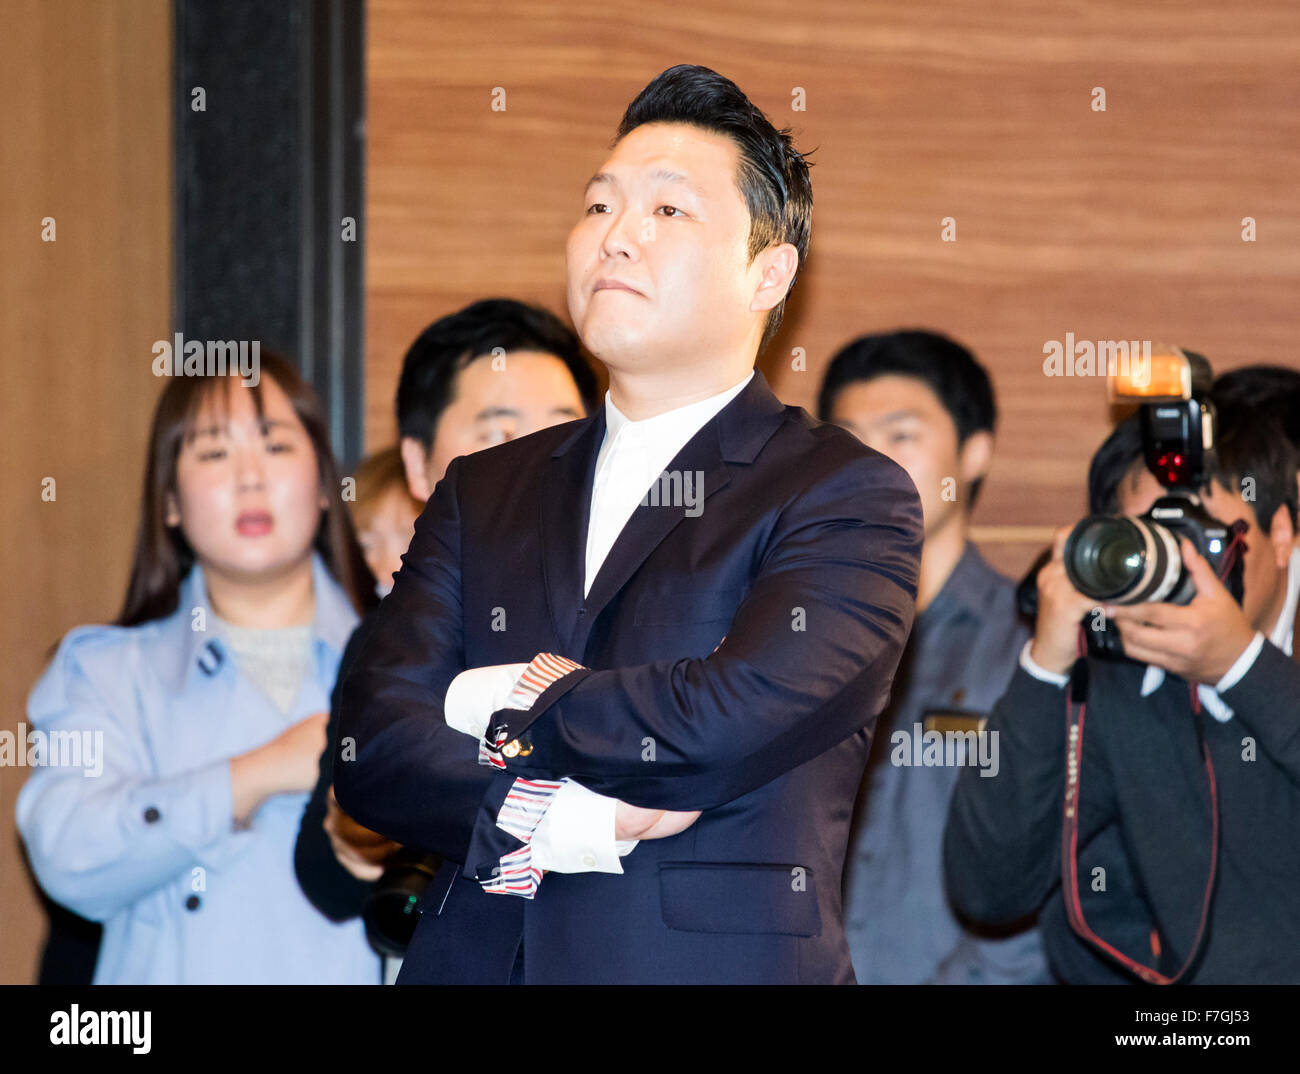 Psy, Nov 30, 2015 : cantante surcoreana Psy (C) busca su nueva música vídeos reproducidos en una pantalla durante una conferencia de prensa acerca de su nuevo álbum 7 en Seúl, Corea del Sur. Psy del 7º álbum tiene nueve pistas con dos canciones principales, "Napal baji (Bellbottoms)' y 'Daddy'. Artistas internacionales como will.i.am, Ed Sheeran y sión T aparecen como artistas invitados en el álbum. © Lee Jae-Won/AFLO/Alamy Live News Foto de stock